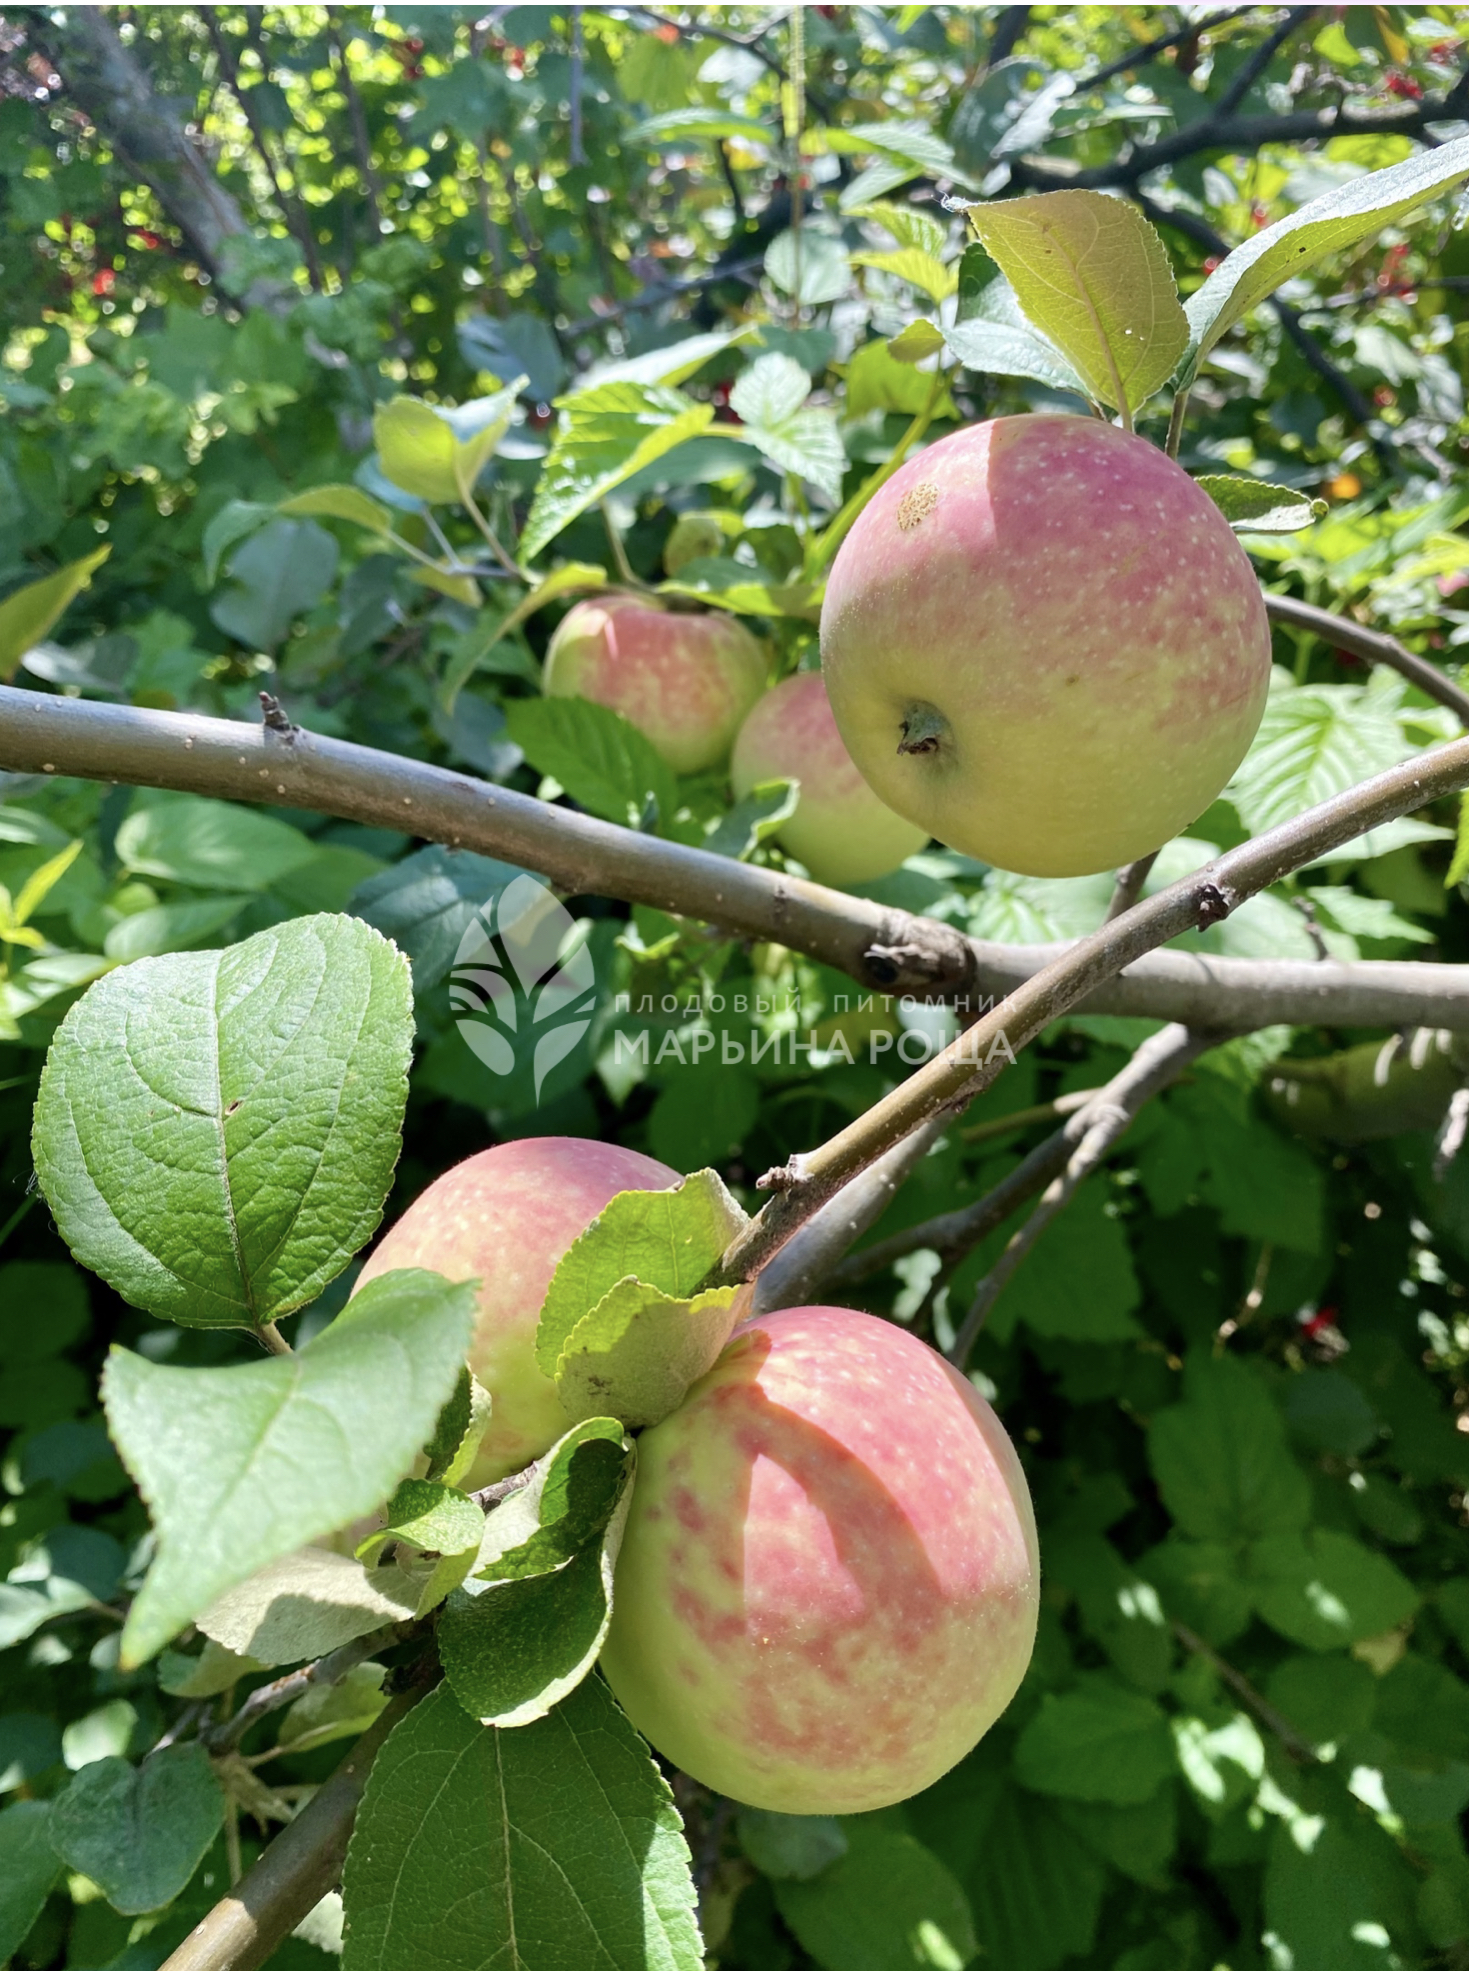 Яблоня сорта Солнцедар - купить саженцы в Перми в питомнике «Марьина роща»